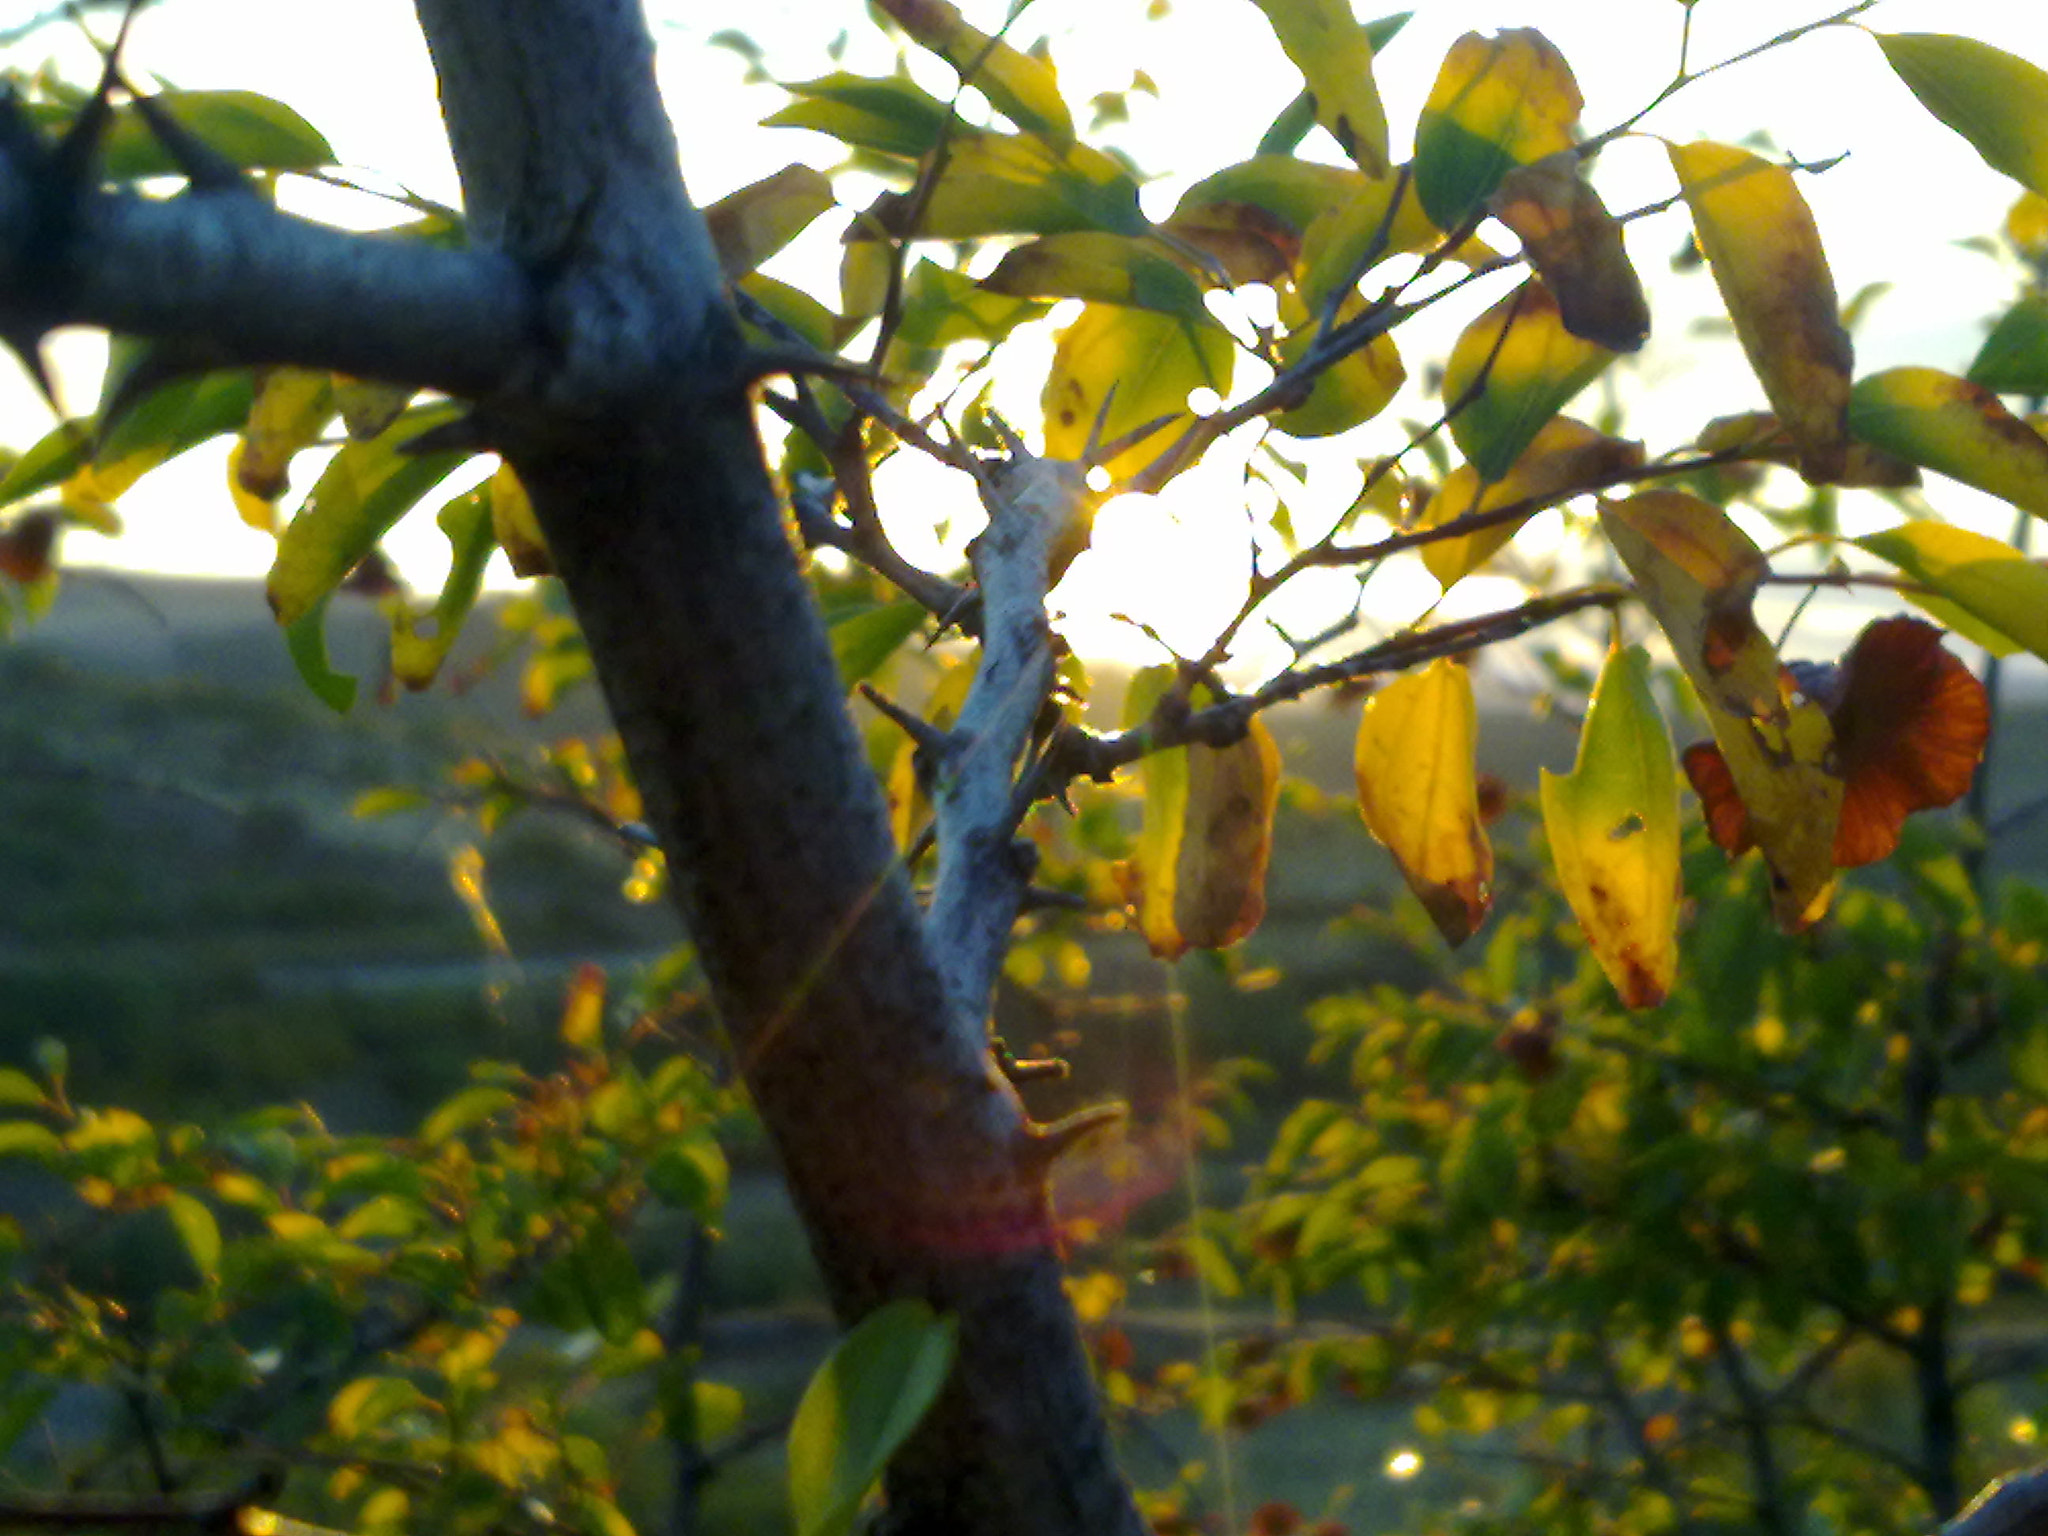 Nokia N97 mini sample photo. Through me - early autumn photography